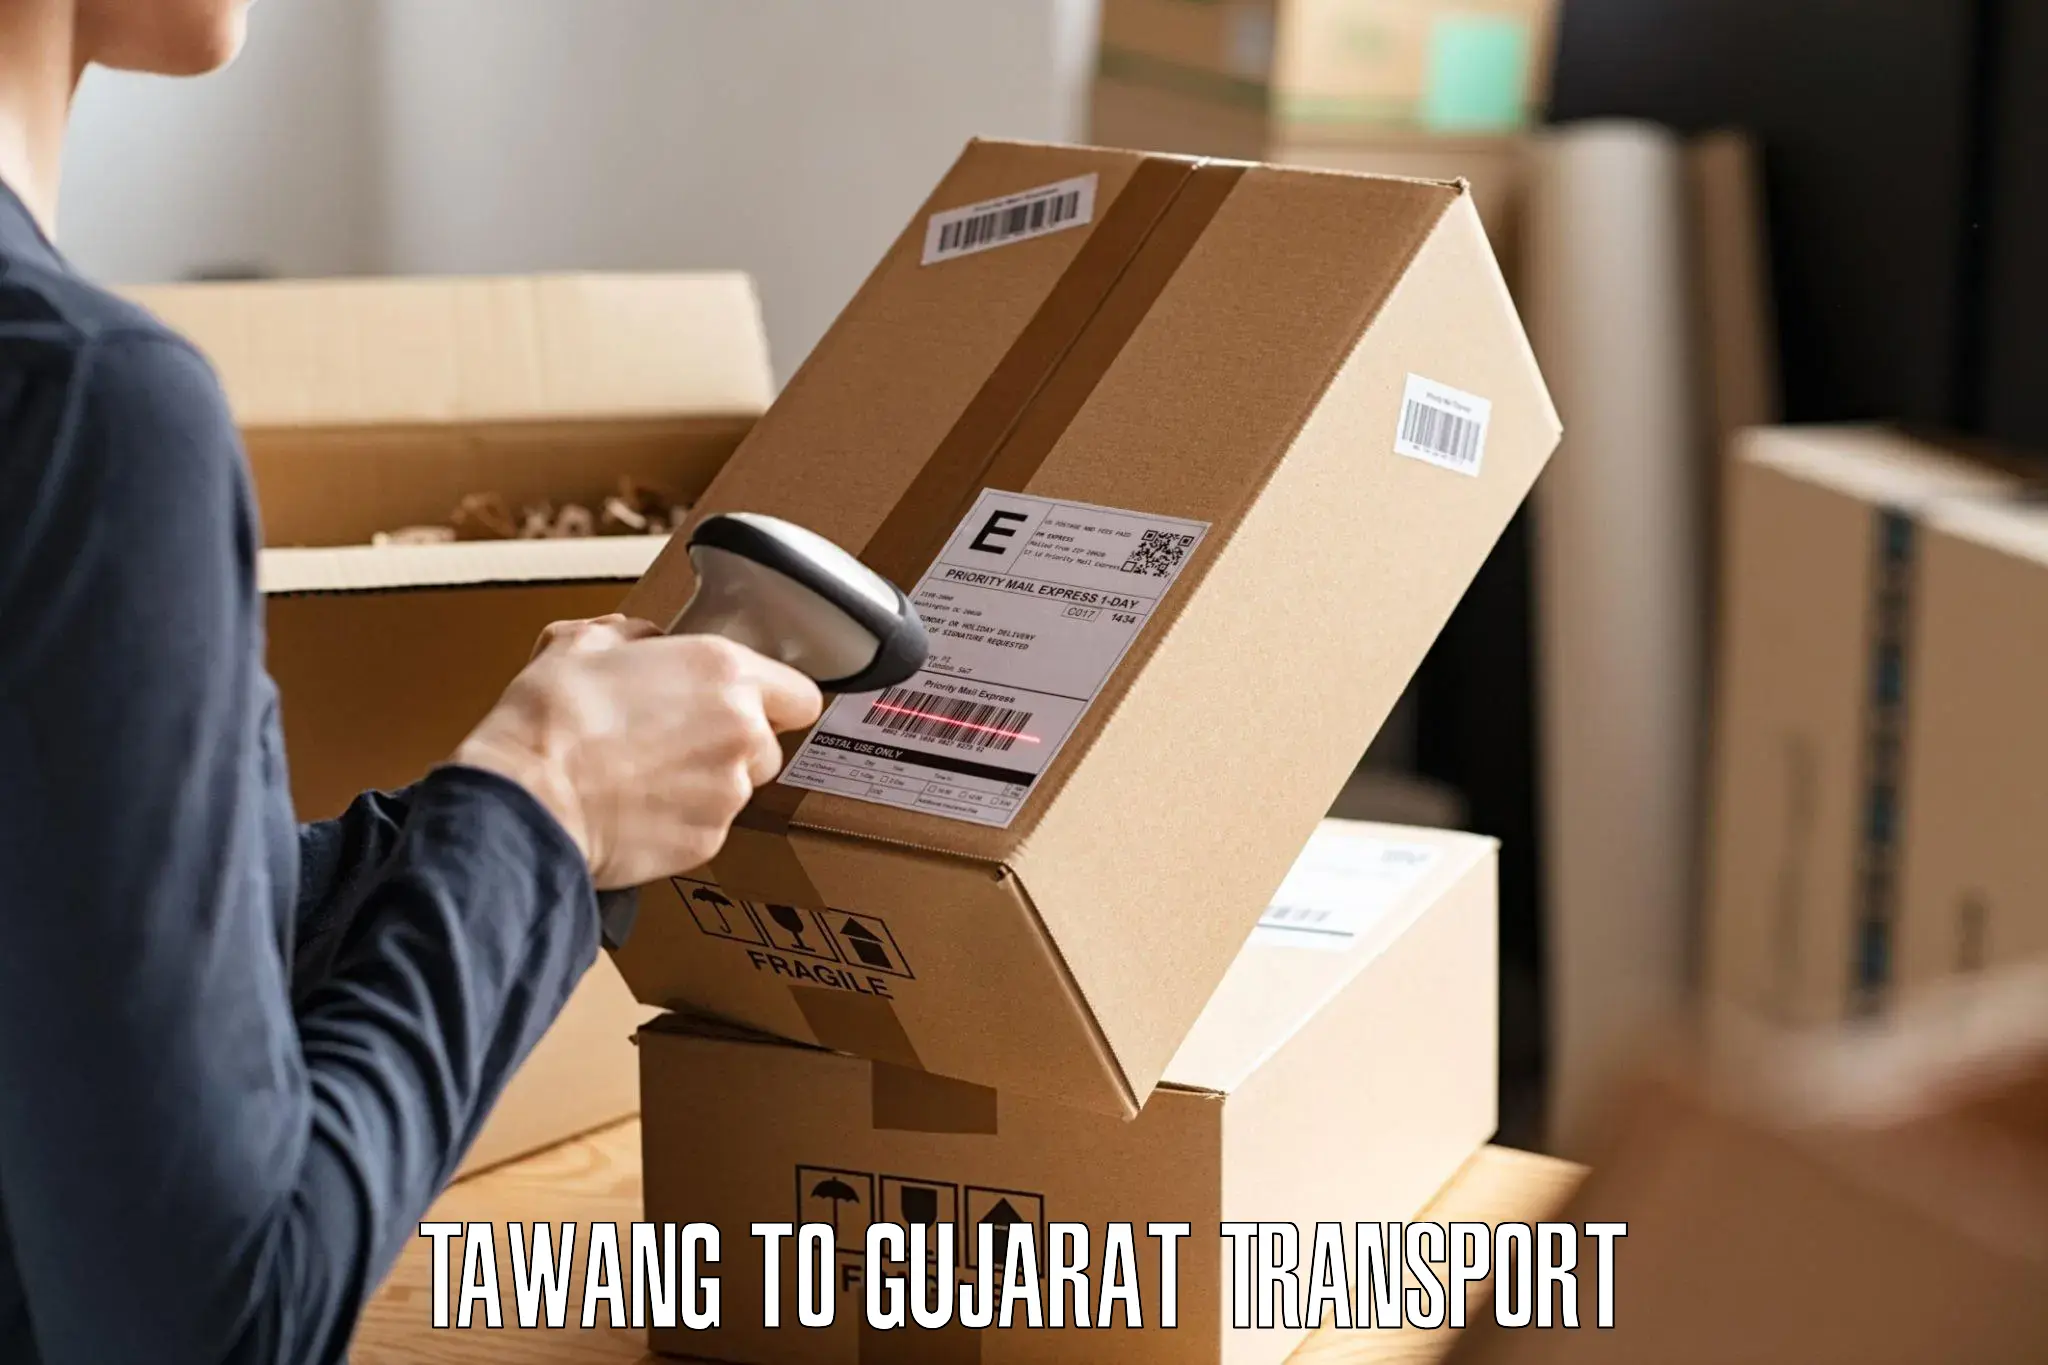 Online transport service Tawang to NIT Surat